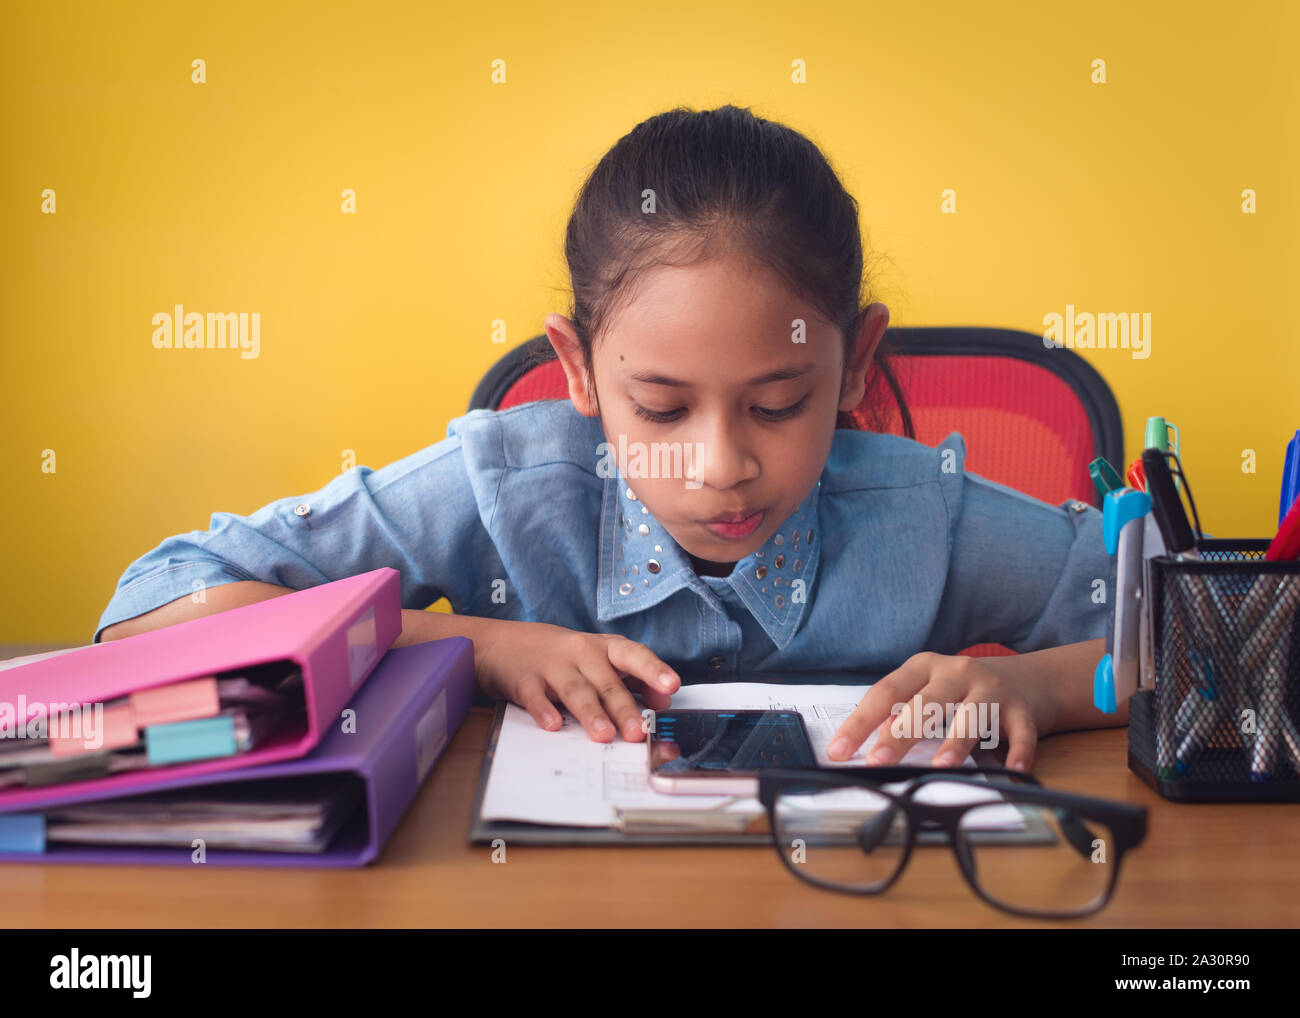 Jolie fille à l'aide de téléphone mobile sur le bureau isolé sur fond jaune. Concept de réalisation. Banque D'Images